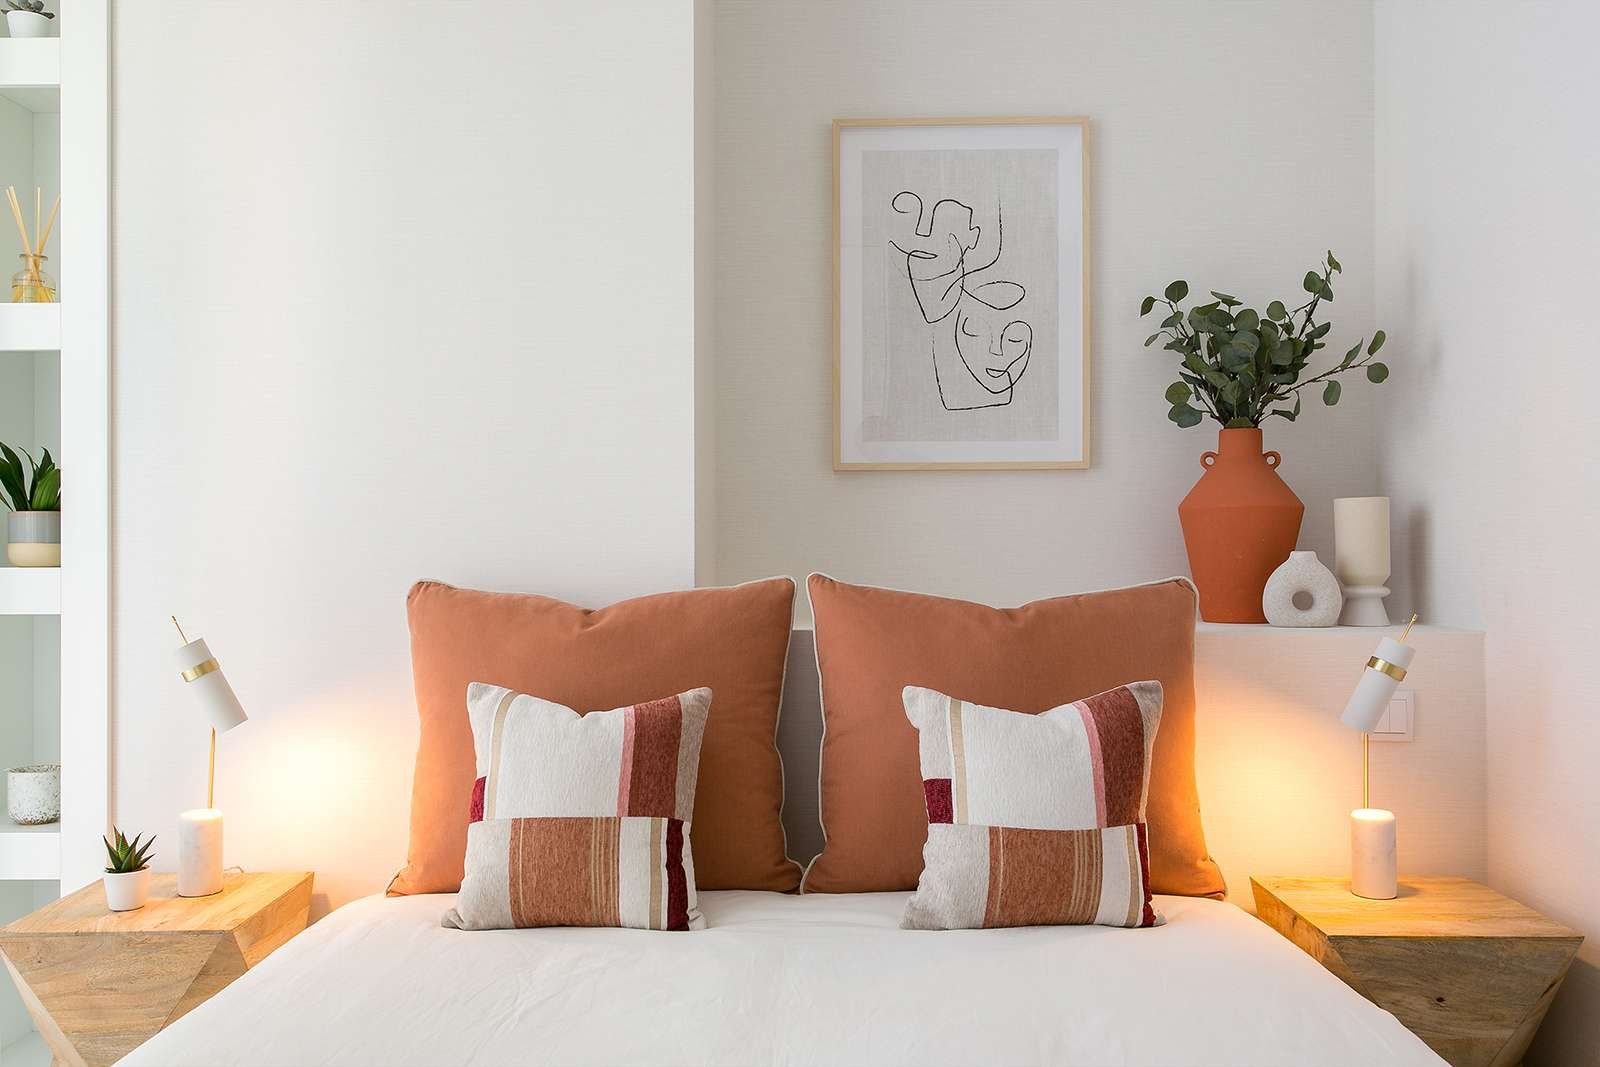 Apartamento | Praça de Espanha, Traço Magenta - Design de Interiores Traço Magenta - Design de Interiores Master bedroom